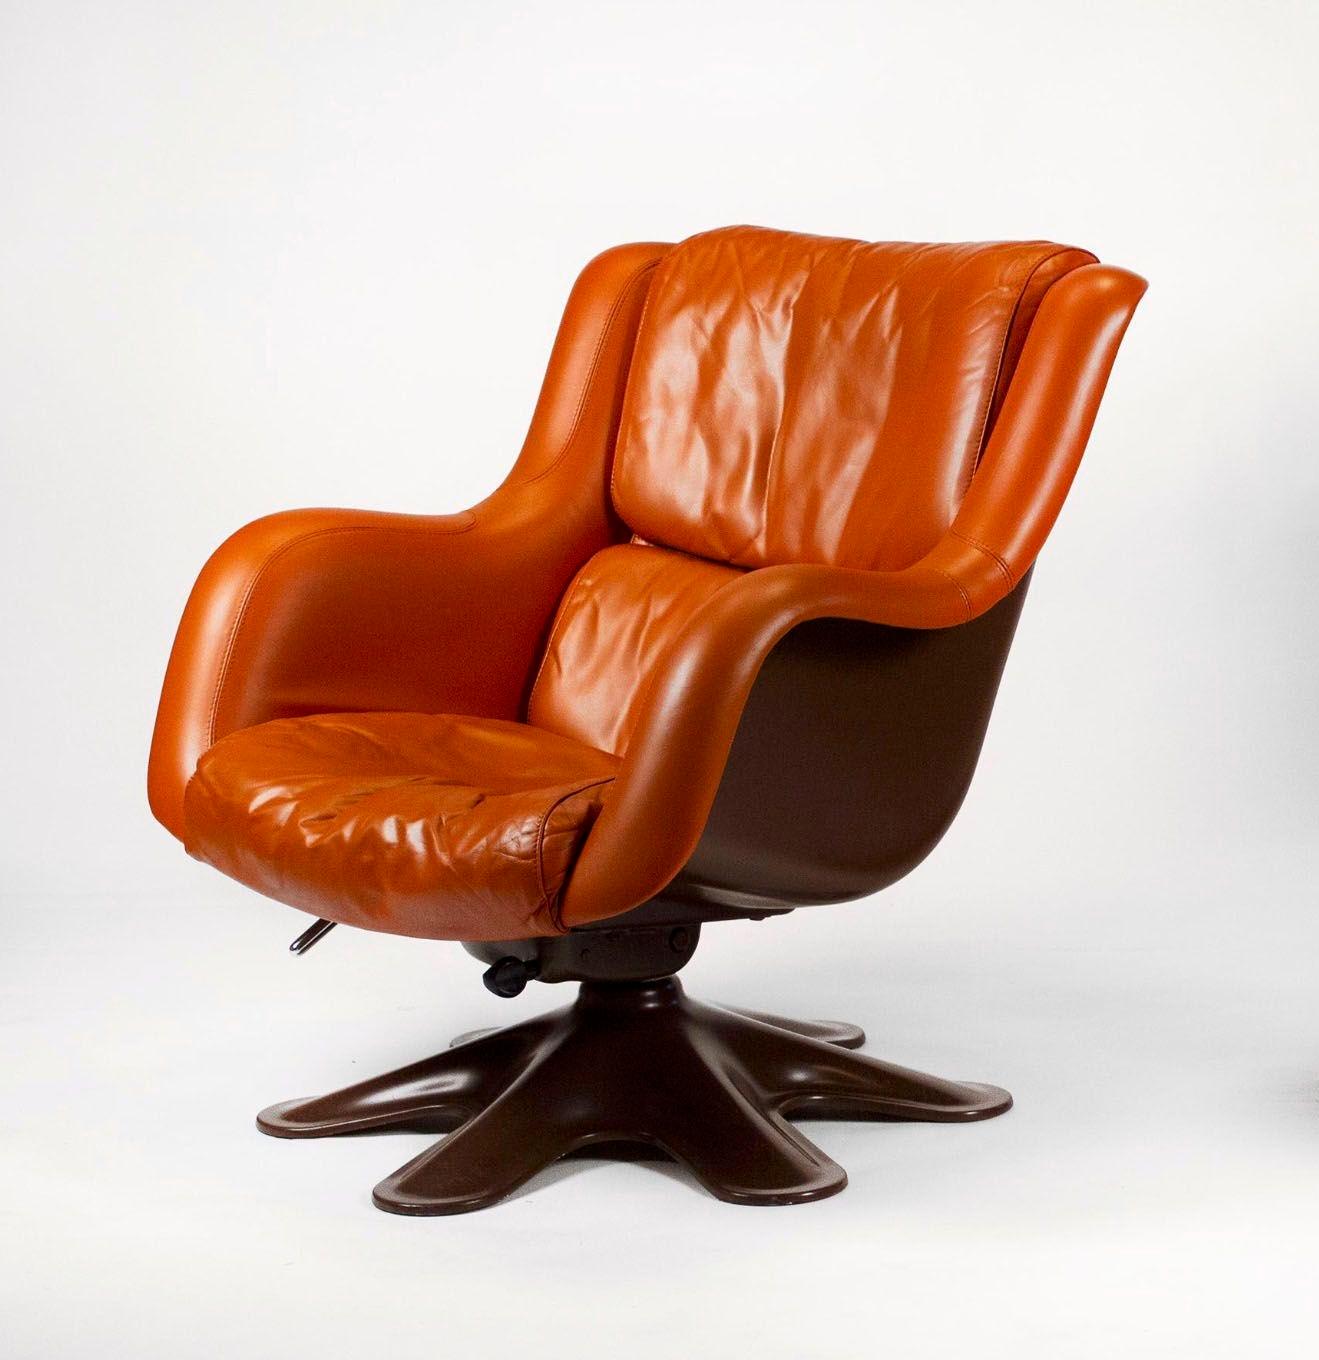 Karuselli dreh- und neigbarer Loungesessel von Yrjo Kukkapuro für Haimi of Finland in original terrakottafarbenem Leder mit schokoladenbraunem Fiberglasgestell. Dieser Sessel des Modells 418 ist auf dem US-Markt sehr selten, vor allem in dieser